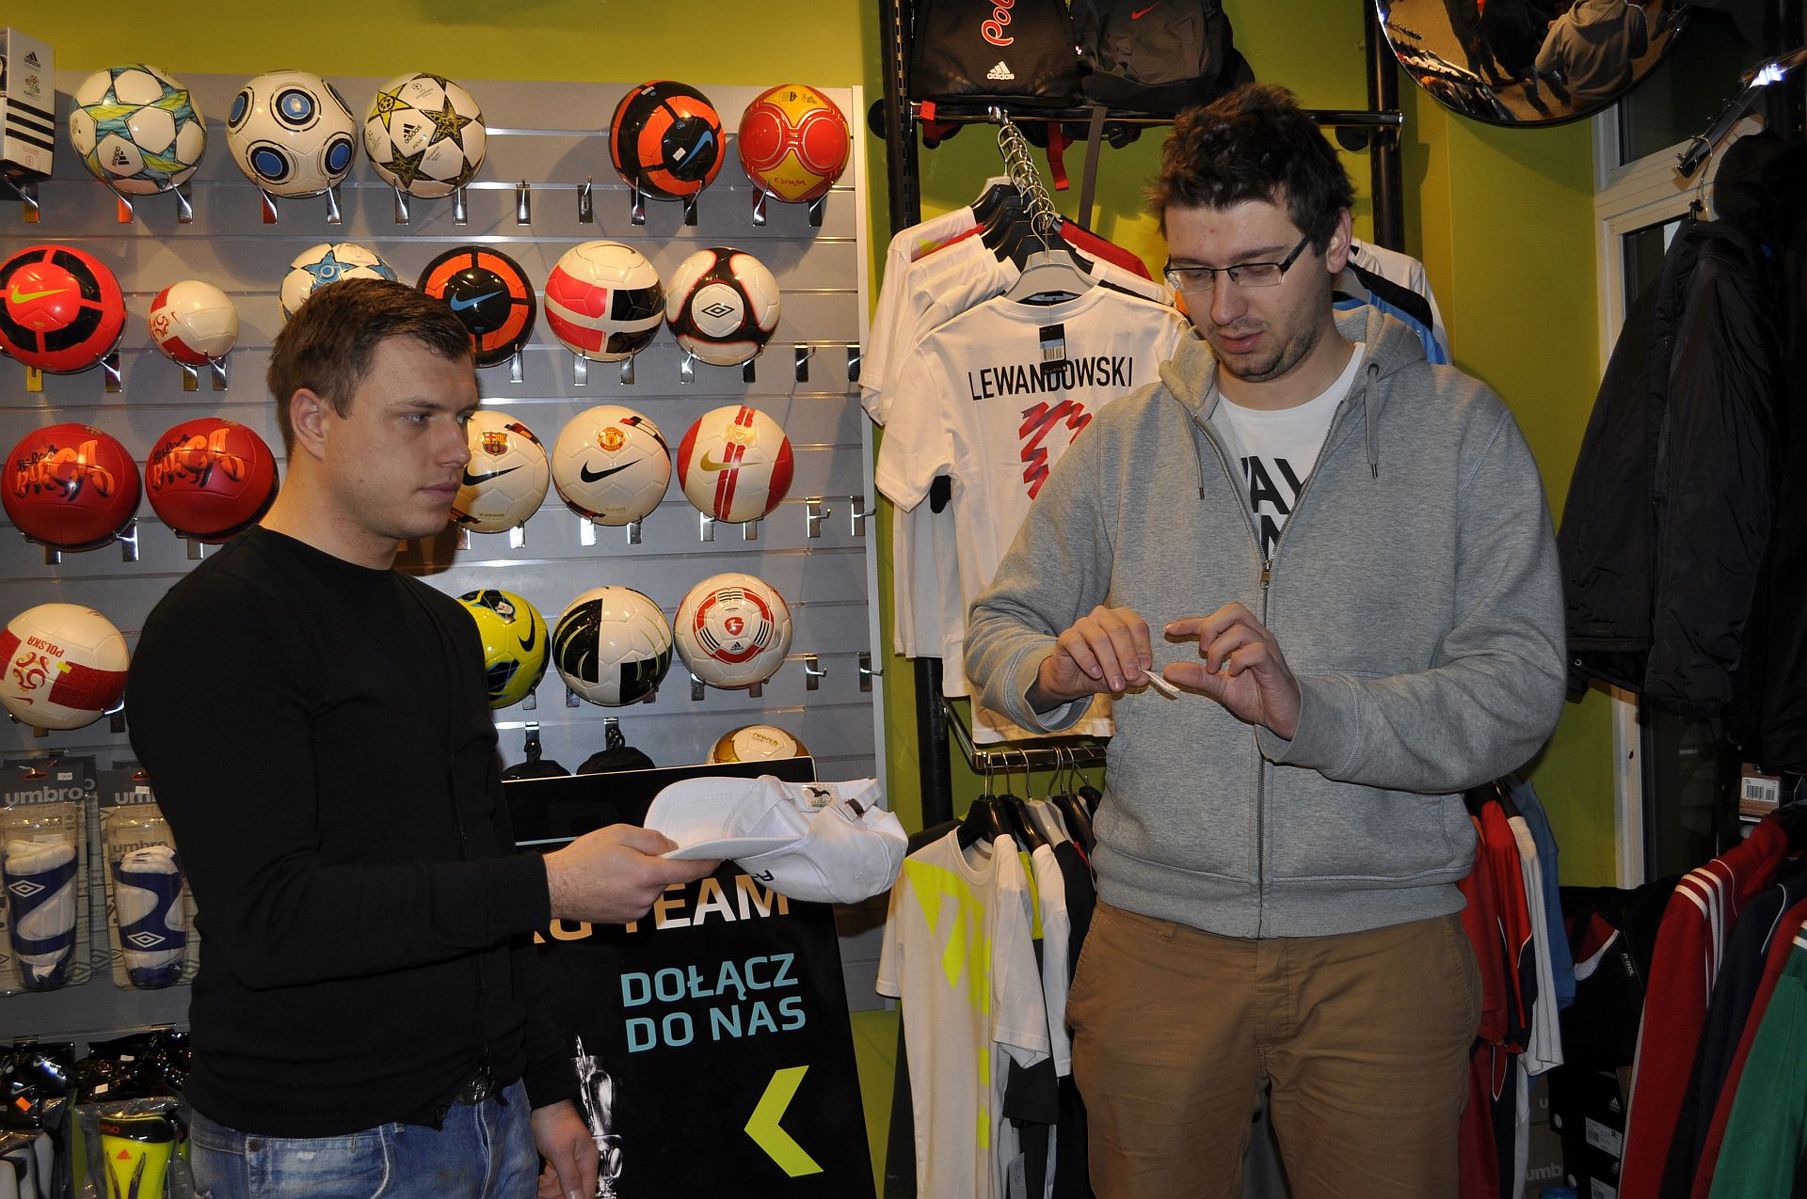 Losowanie RG Pucharu dwadozera.pl w sklepie RG Teamwear w centrum handlowym Manhattan w Olsztynie. Fot. Emil Marecki